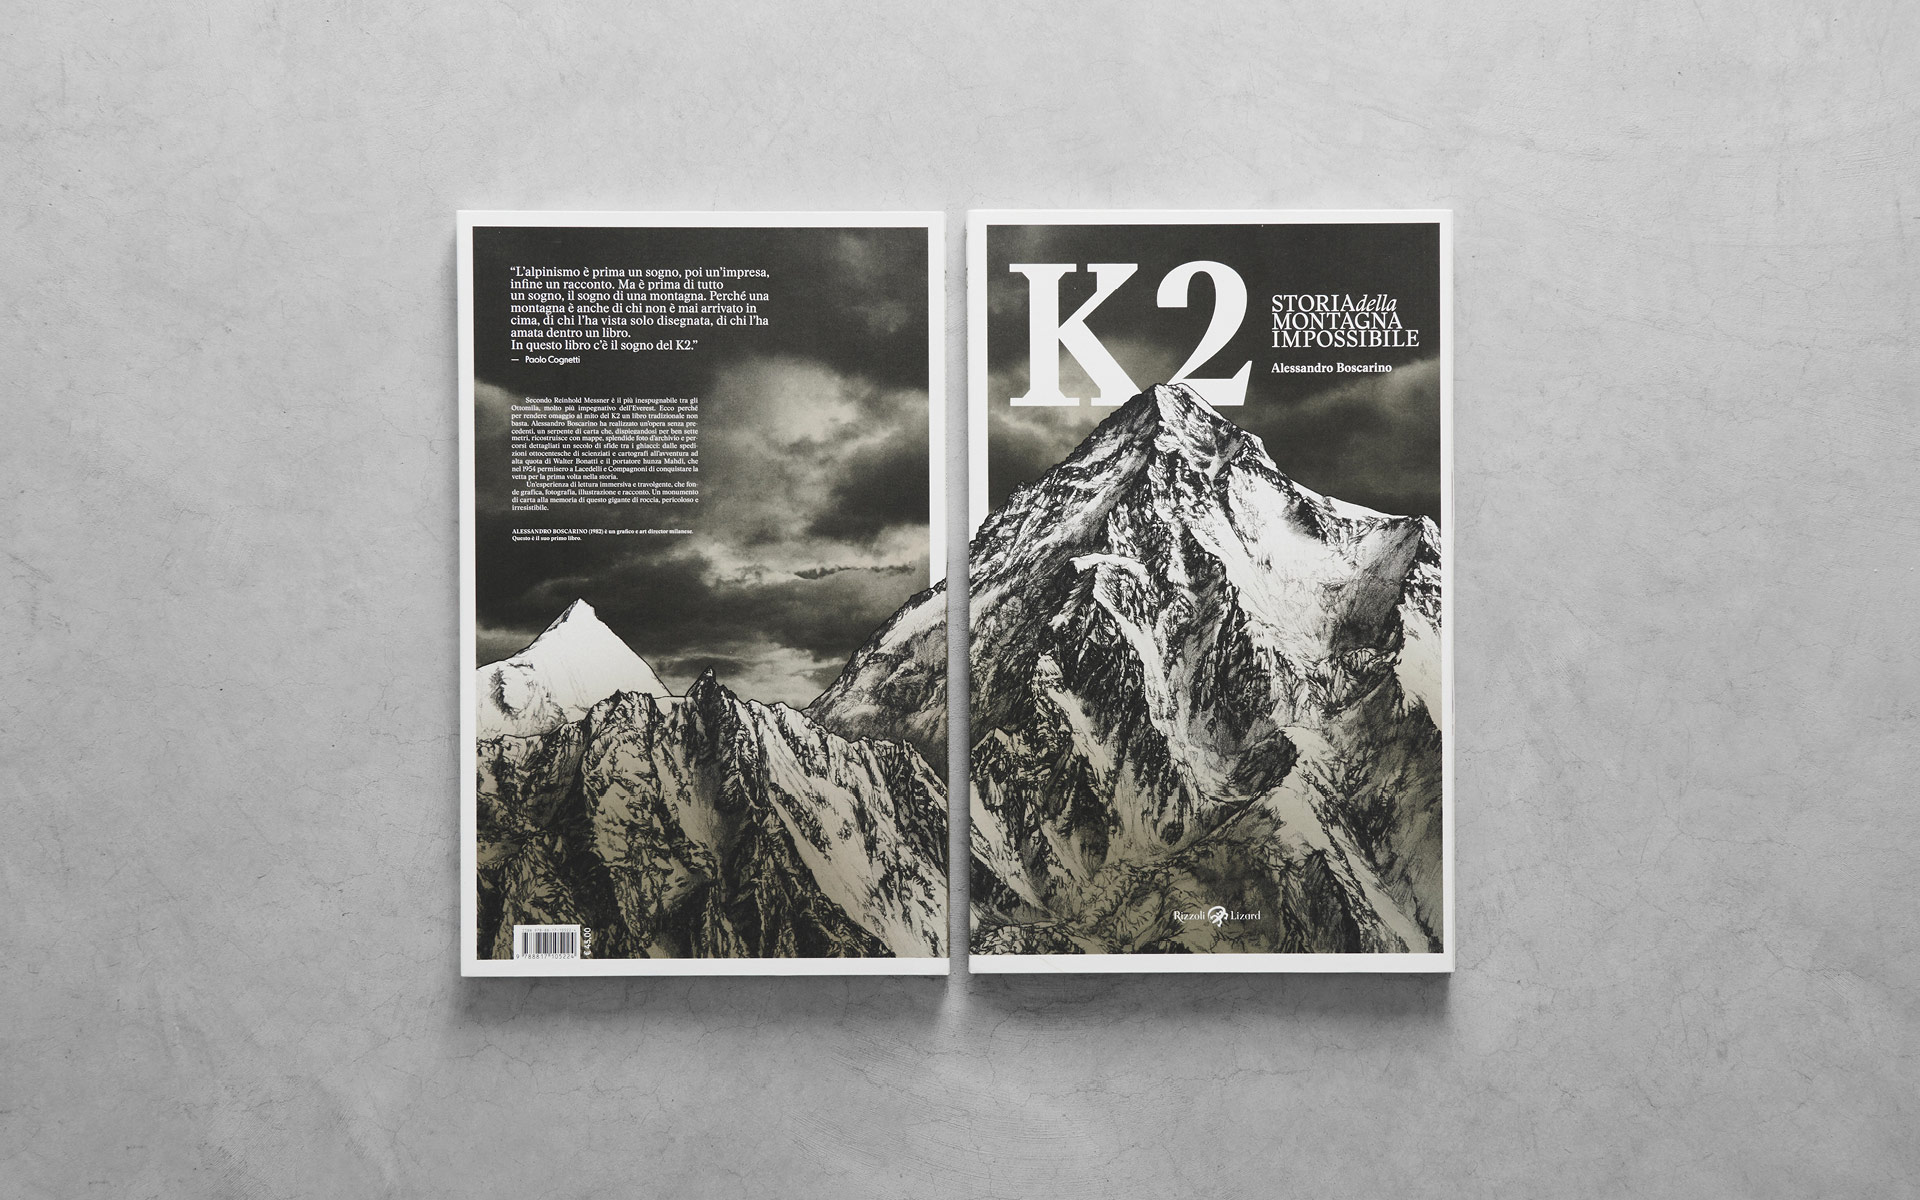 Anteprima delle pagine interne del libro 'K2 Storia della Montagna Impossibile' pubblicato da Rizzoli Lizard